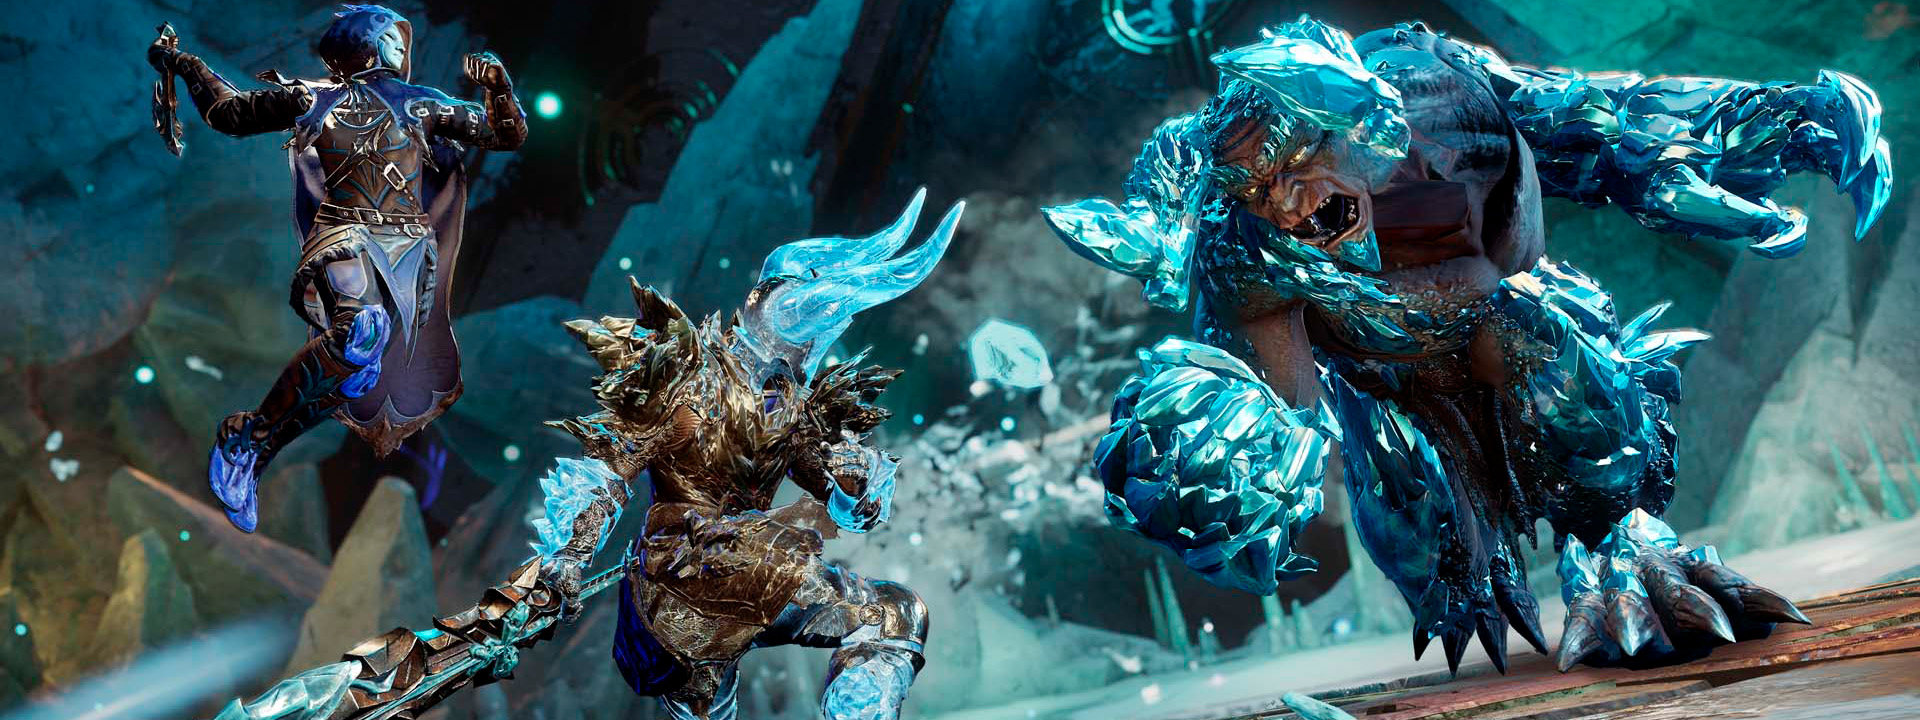 Des aventuriers combattent des ennemis de glace avec diverses armes dans l’expédition Lac de glace.